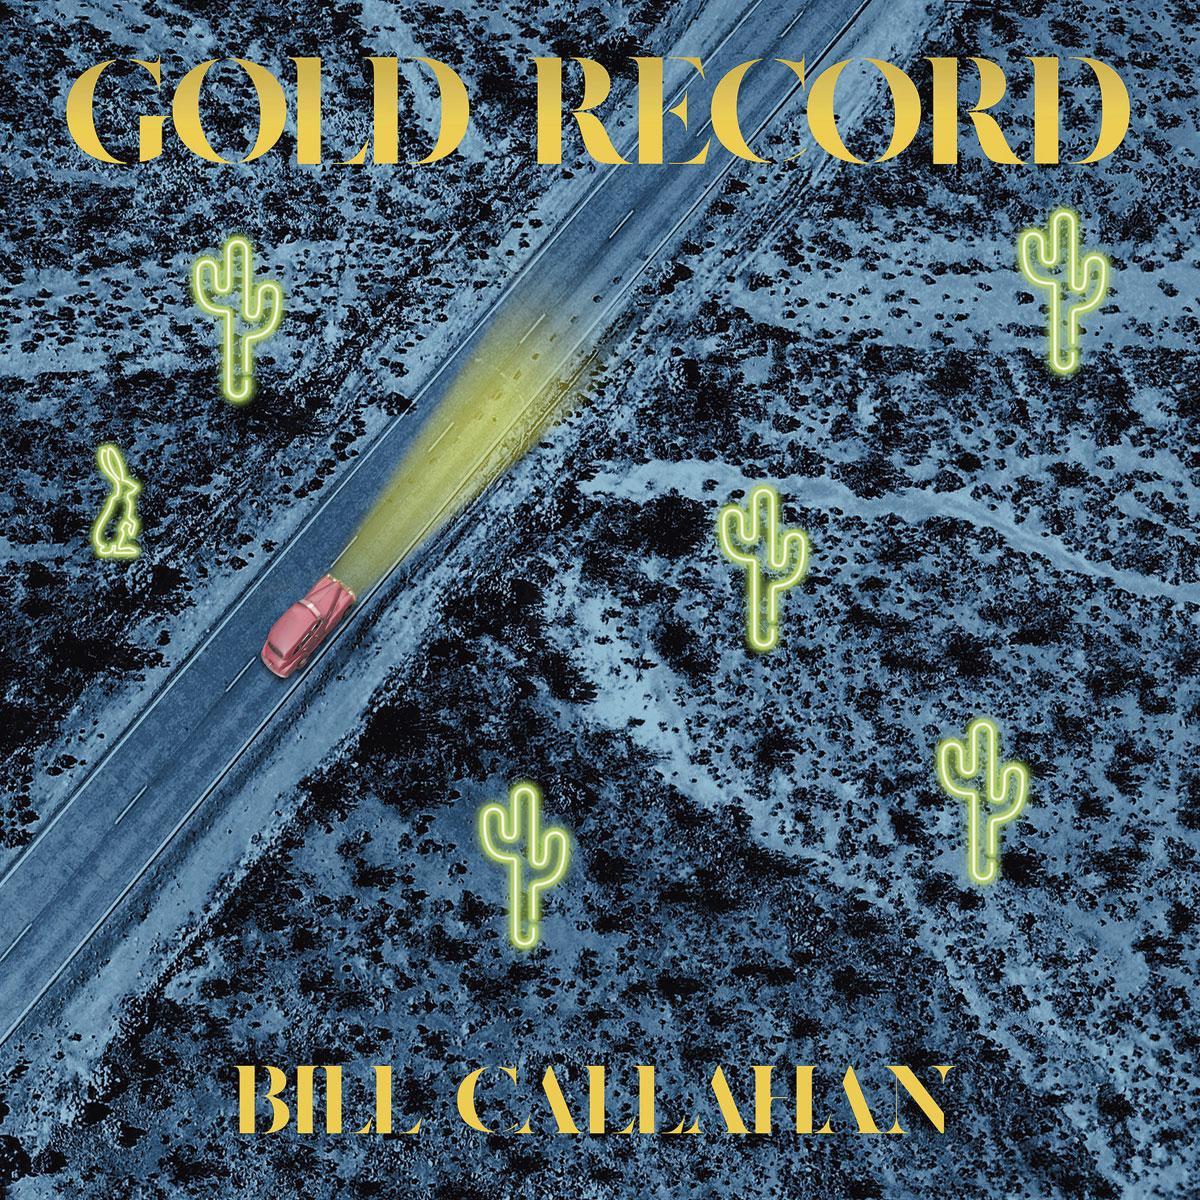 'Gold Record': meestersongsmid Bill Callahan heeft goud in de mond